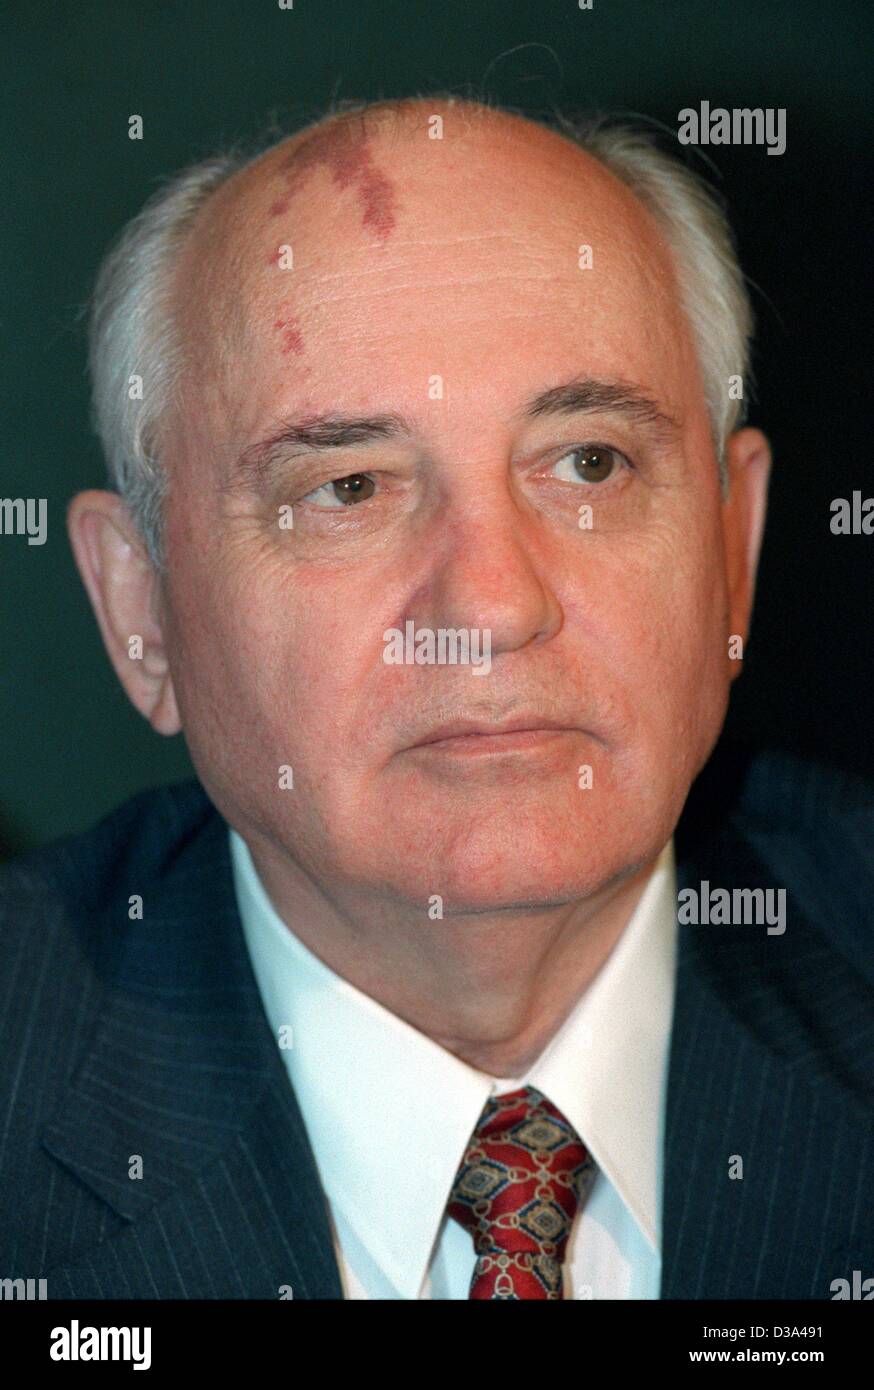 (Dpa file) - Ex presidente sovietico Mikhail Gorbaciov, raffigurato in Francoforte sul Meno, 25 giugno 1997. Egli era a capo dell'Unione Sovietica da 1985 fino al 1991. Avviando un periodo di apertura politica (Glasnost) e della trasformazione (Perestroika) destinati a modernizzare l'U.R.S.S. pose la prima pietra Foto Stock